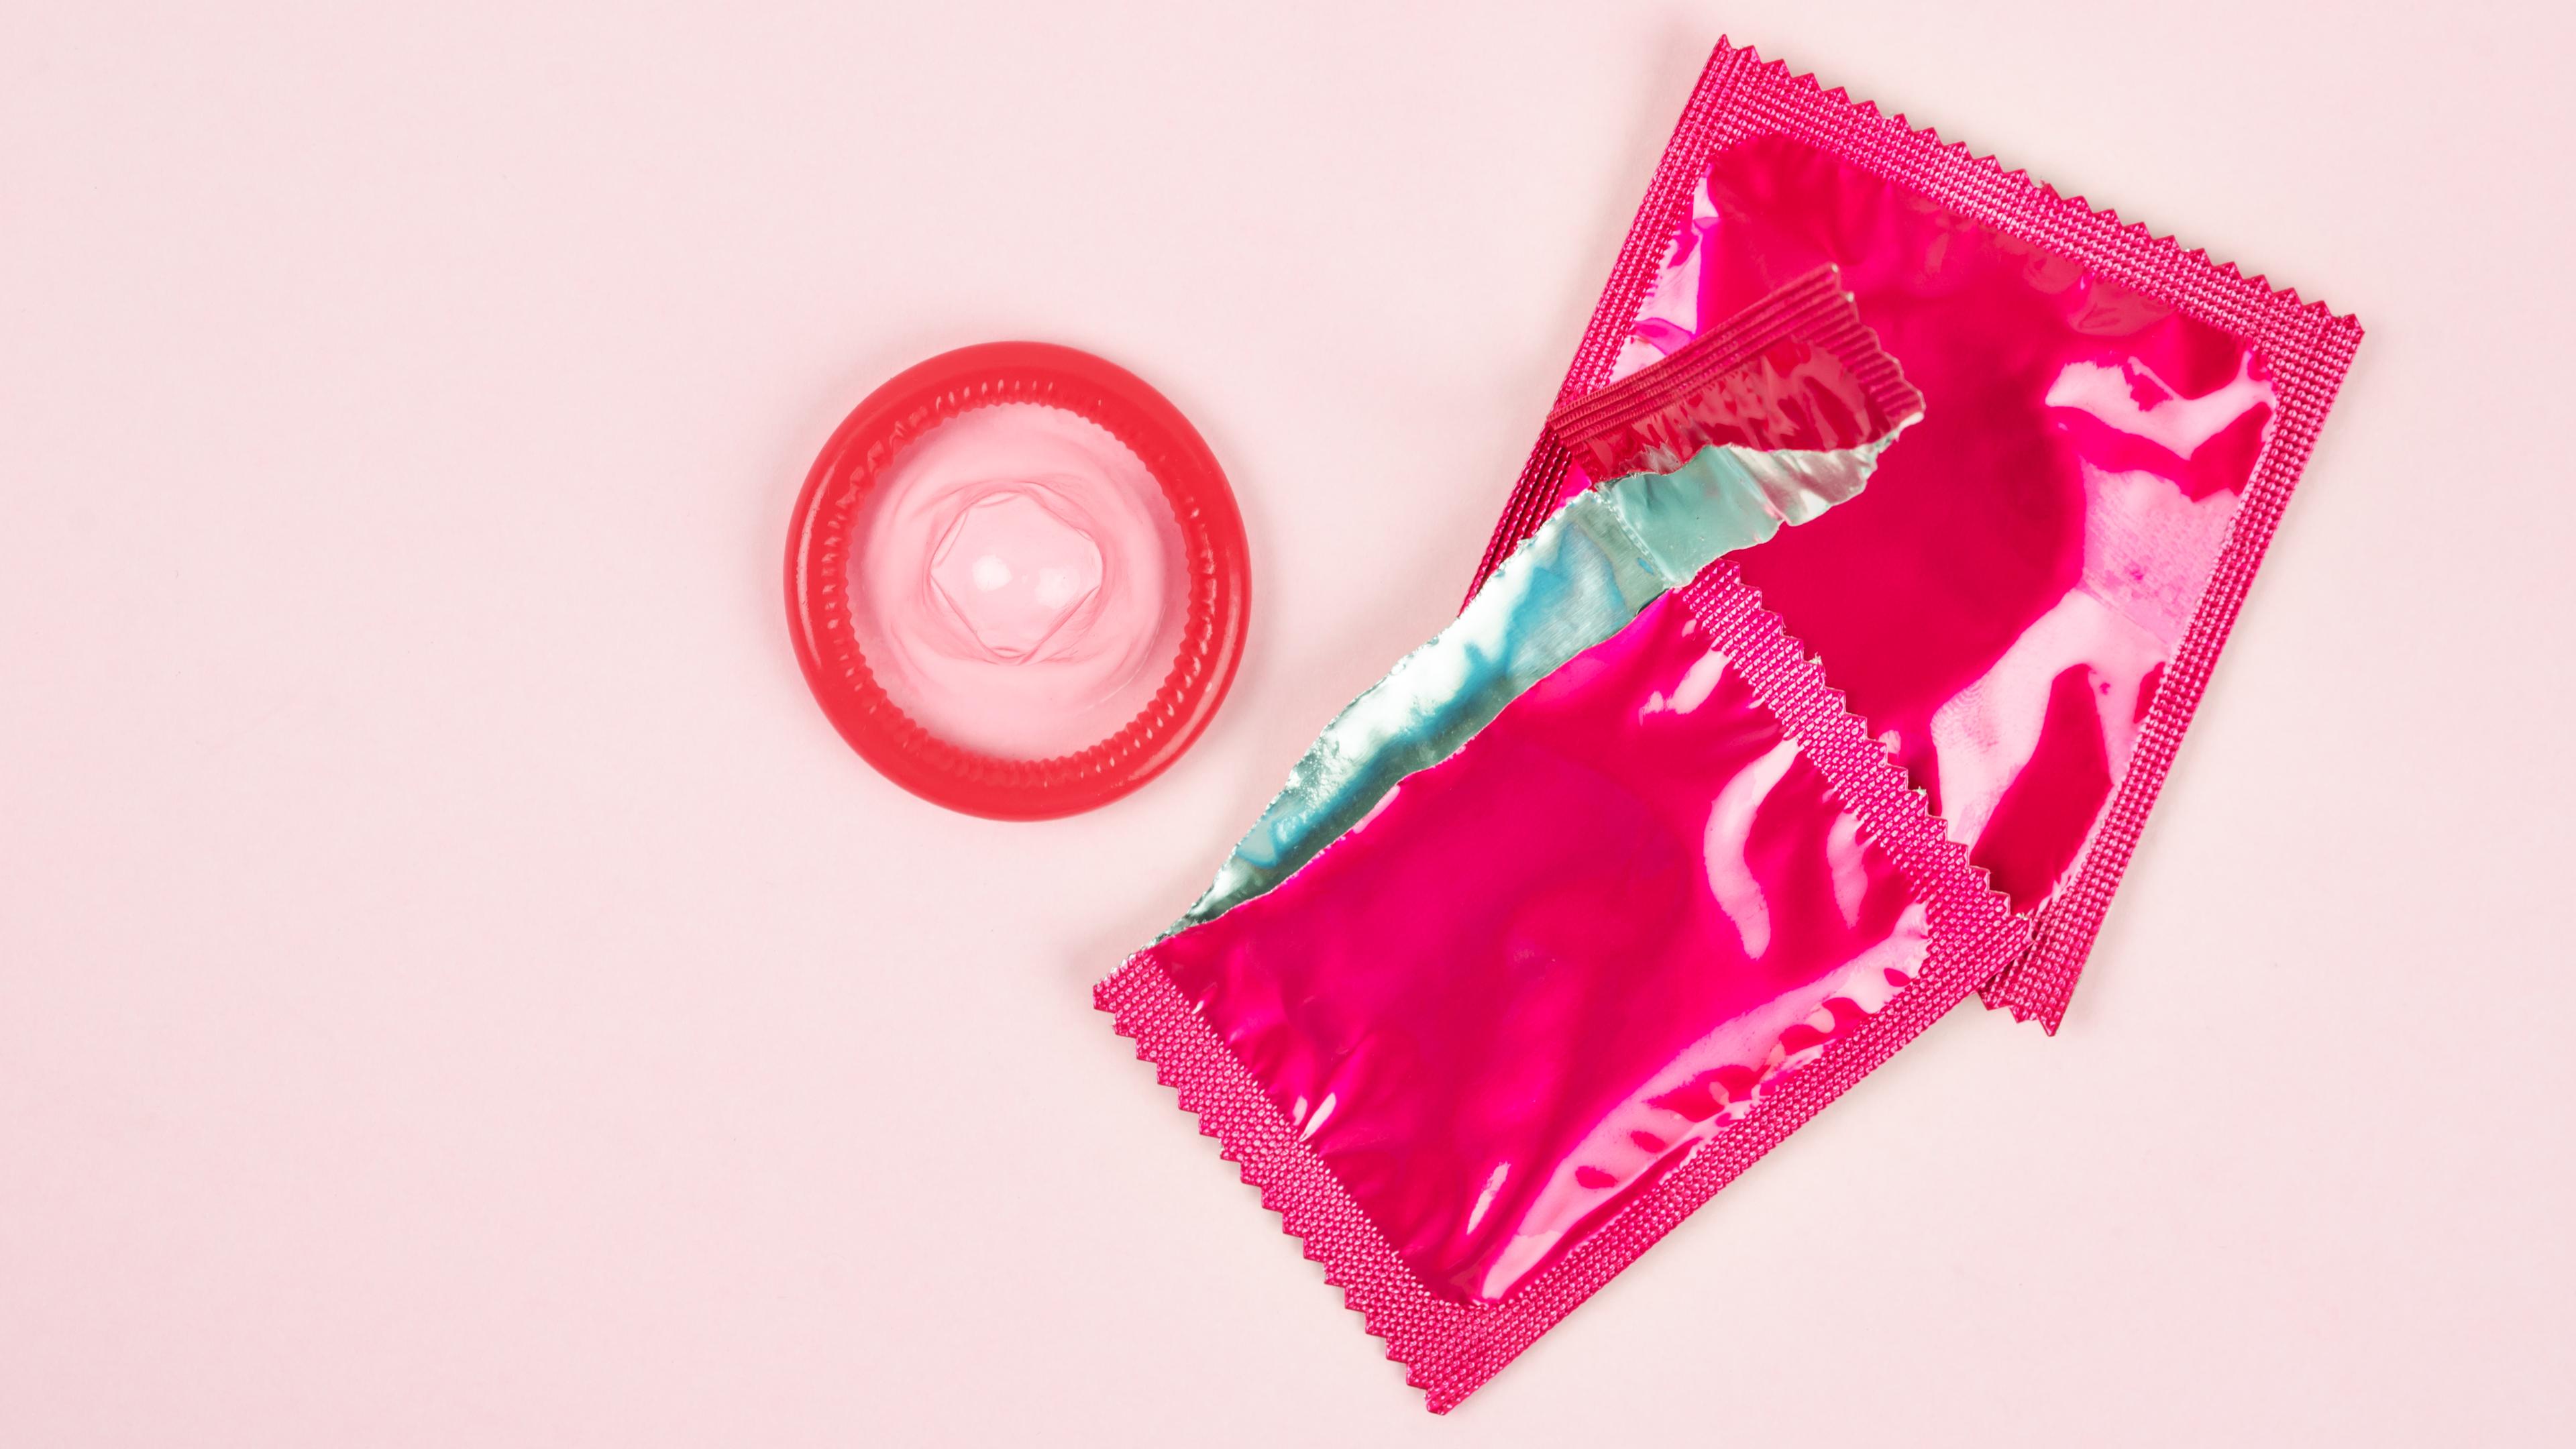 Das Bild zeigt eine aufgerissene Kondom-Packung. In Frankreich sollen junge Leute laut Präsident Macron bald gratis Kondome in Apotheken holen können.